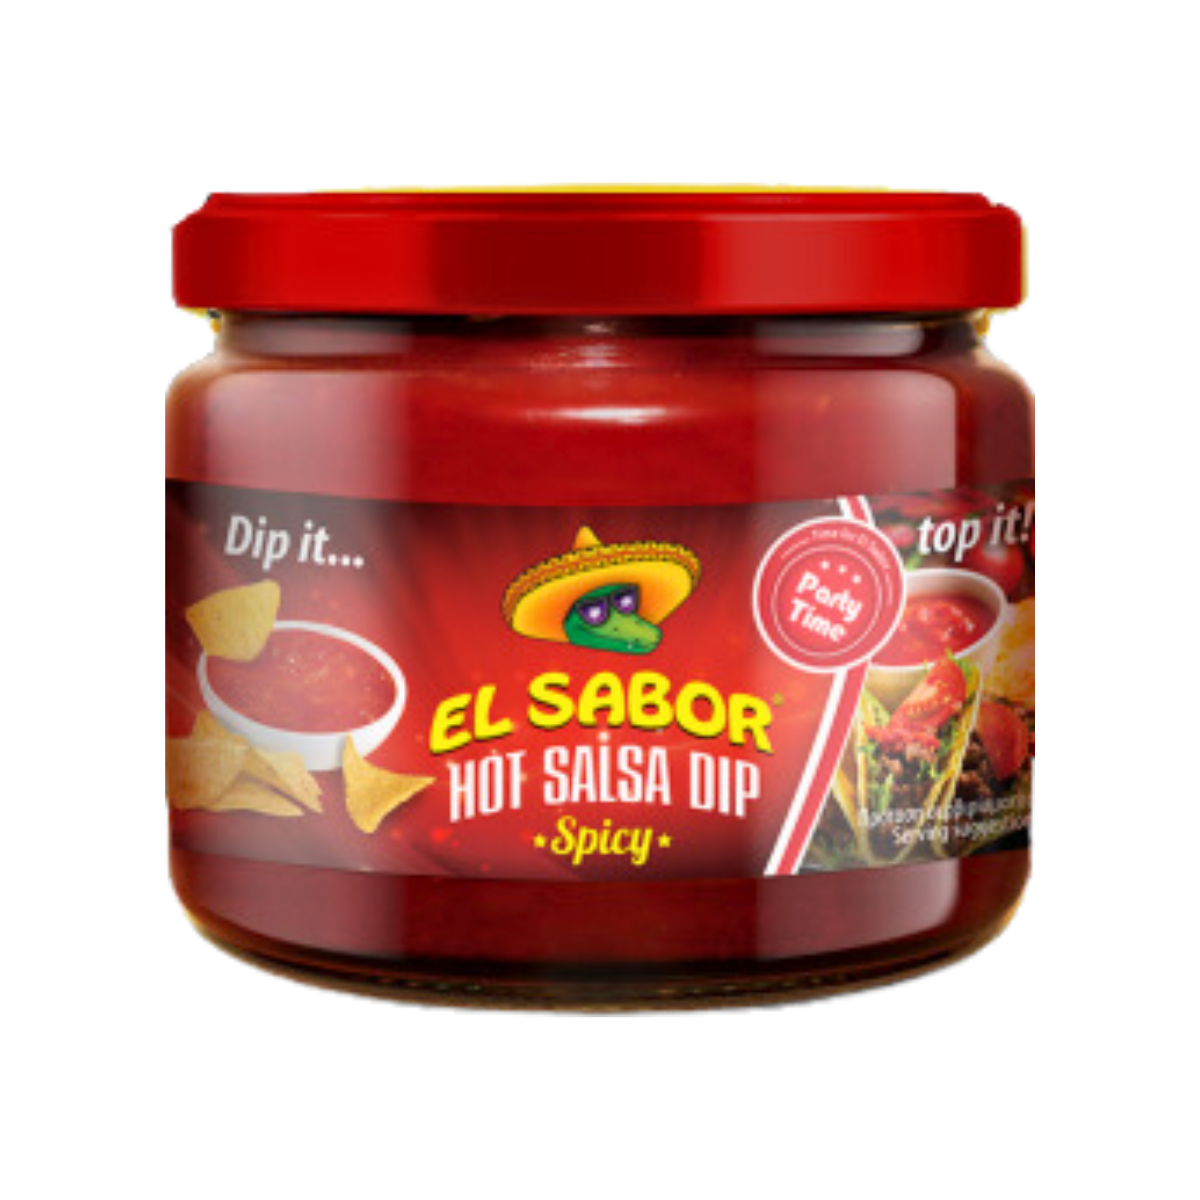 El Sabor Hot Salsa Dip Spicy 300g